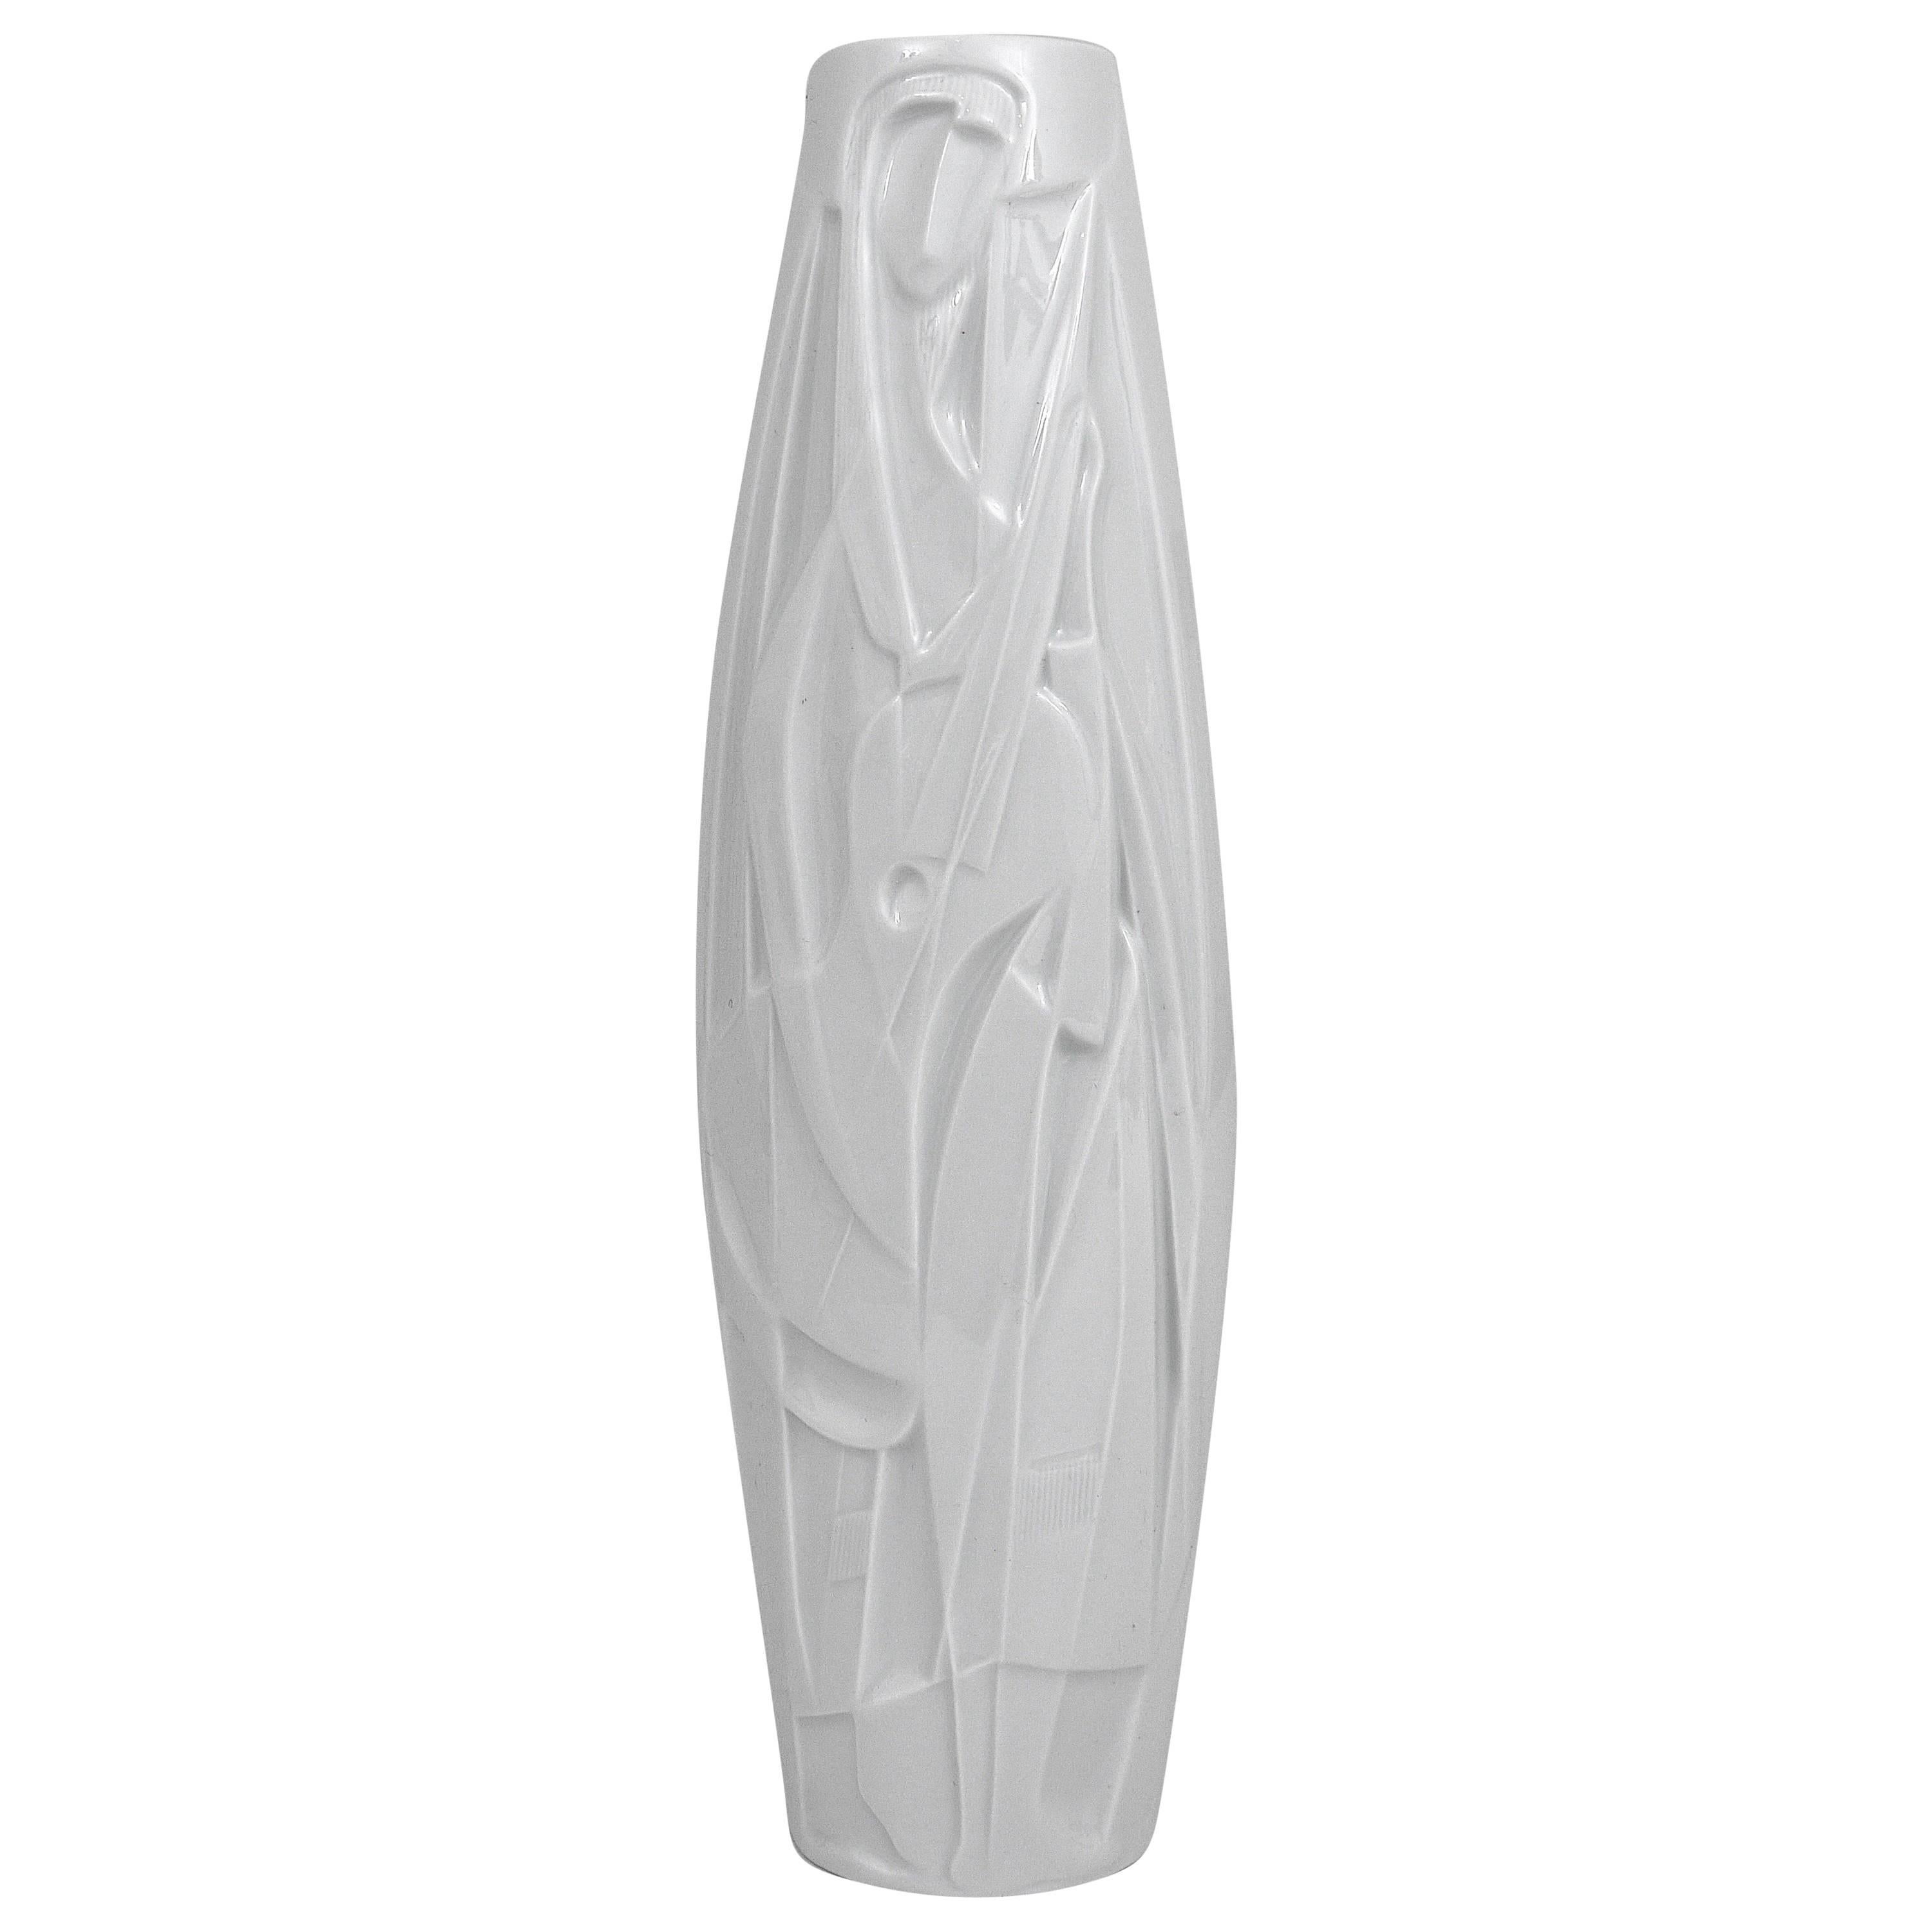 White Relief Op Art Porcelain Vase, Cuno Fischer, Rosenthal Studio-Linie, 1960s